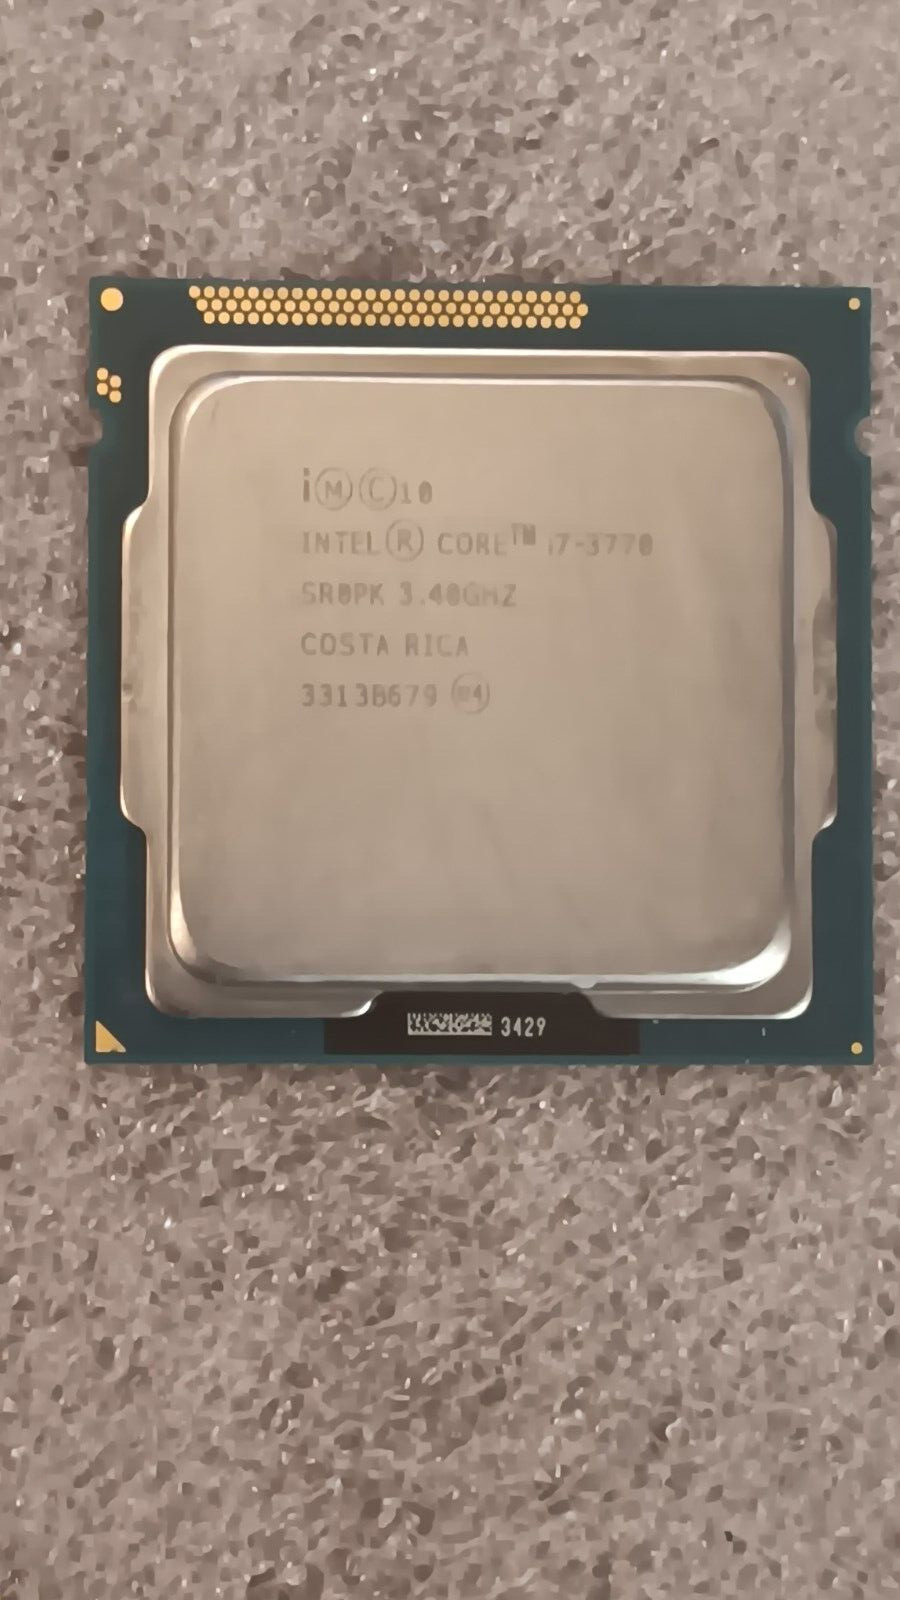 Intel Core i7-3770 CPU/Processor | 3.4GHz | Quad-Core | LGA 1150 | SR0PK